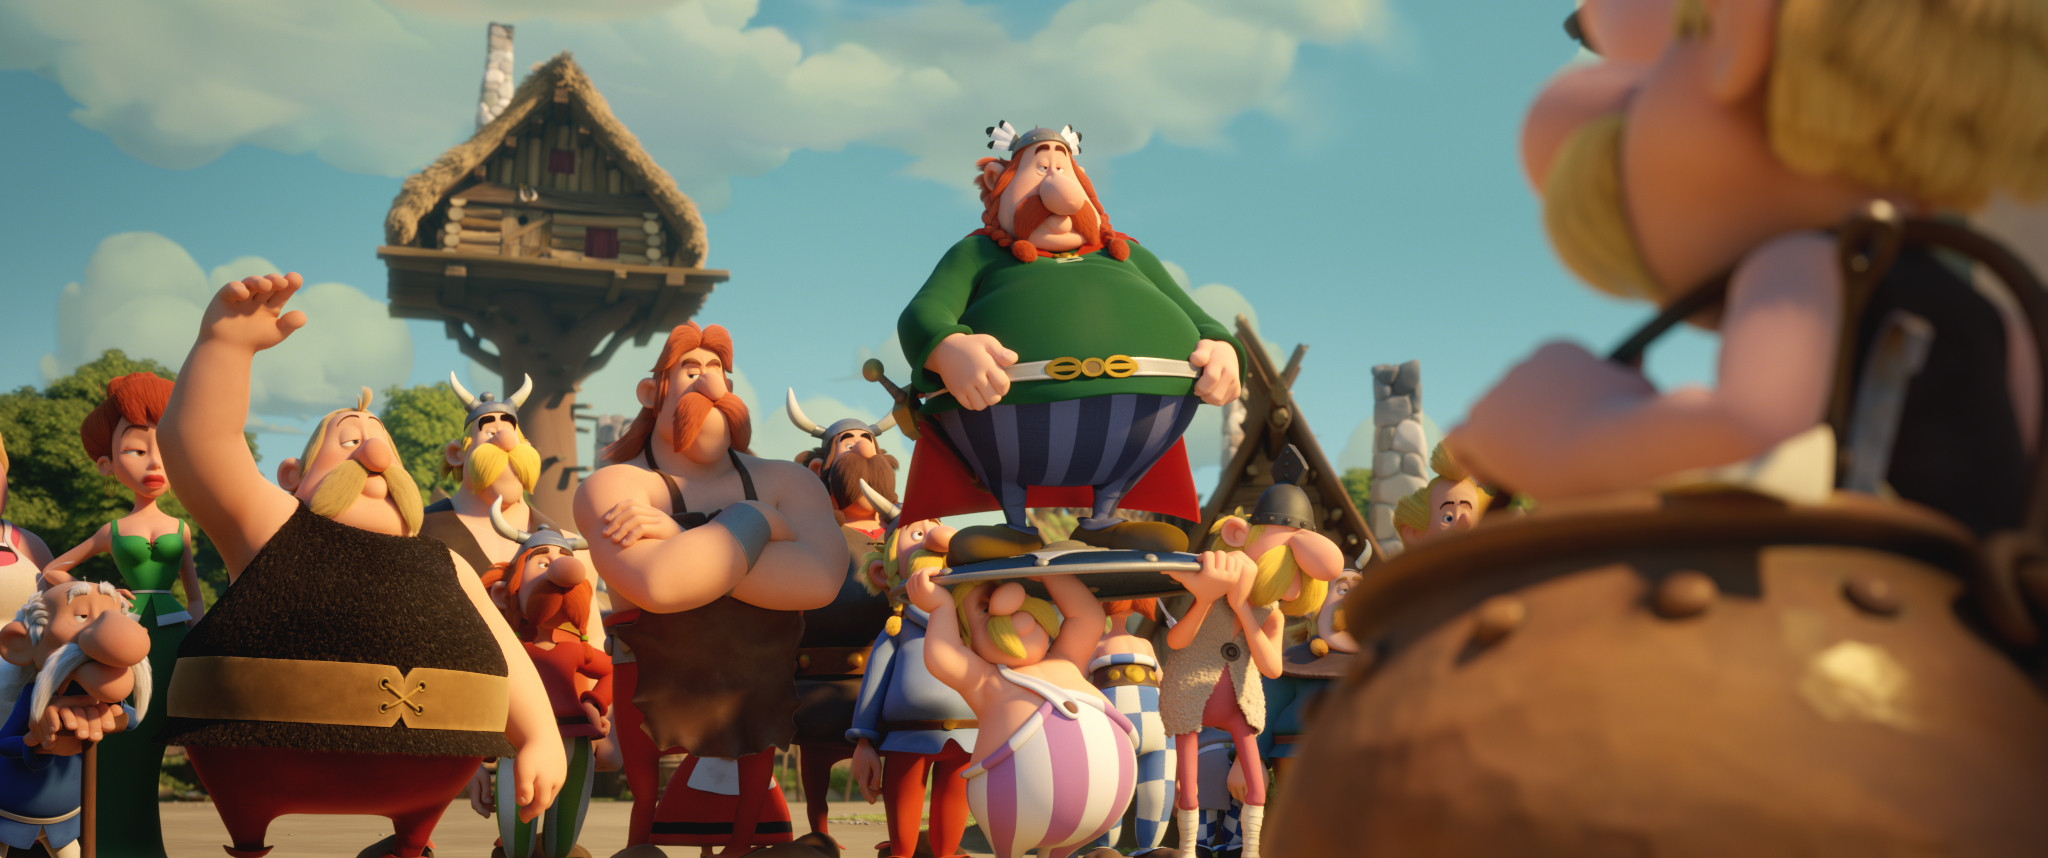 Asterix und das Geheimnis des Zaubertranks: Scene Image 8